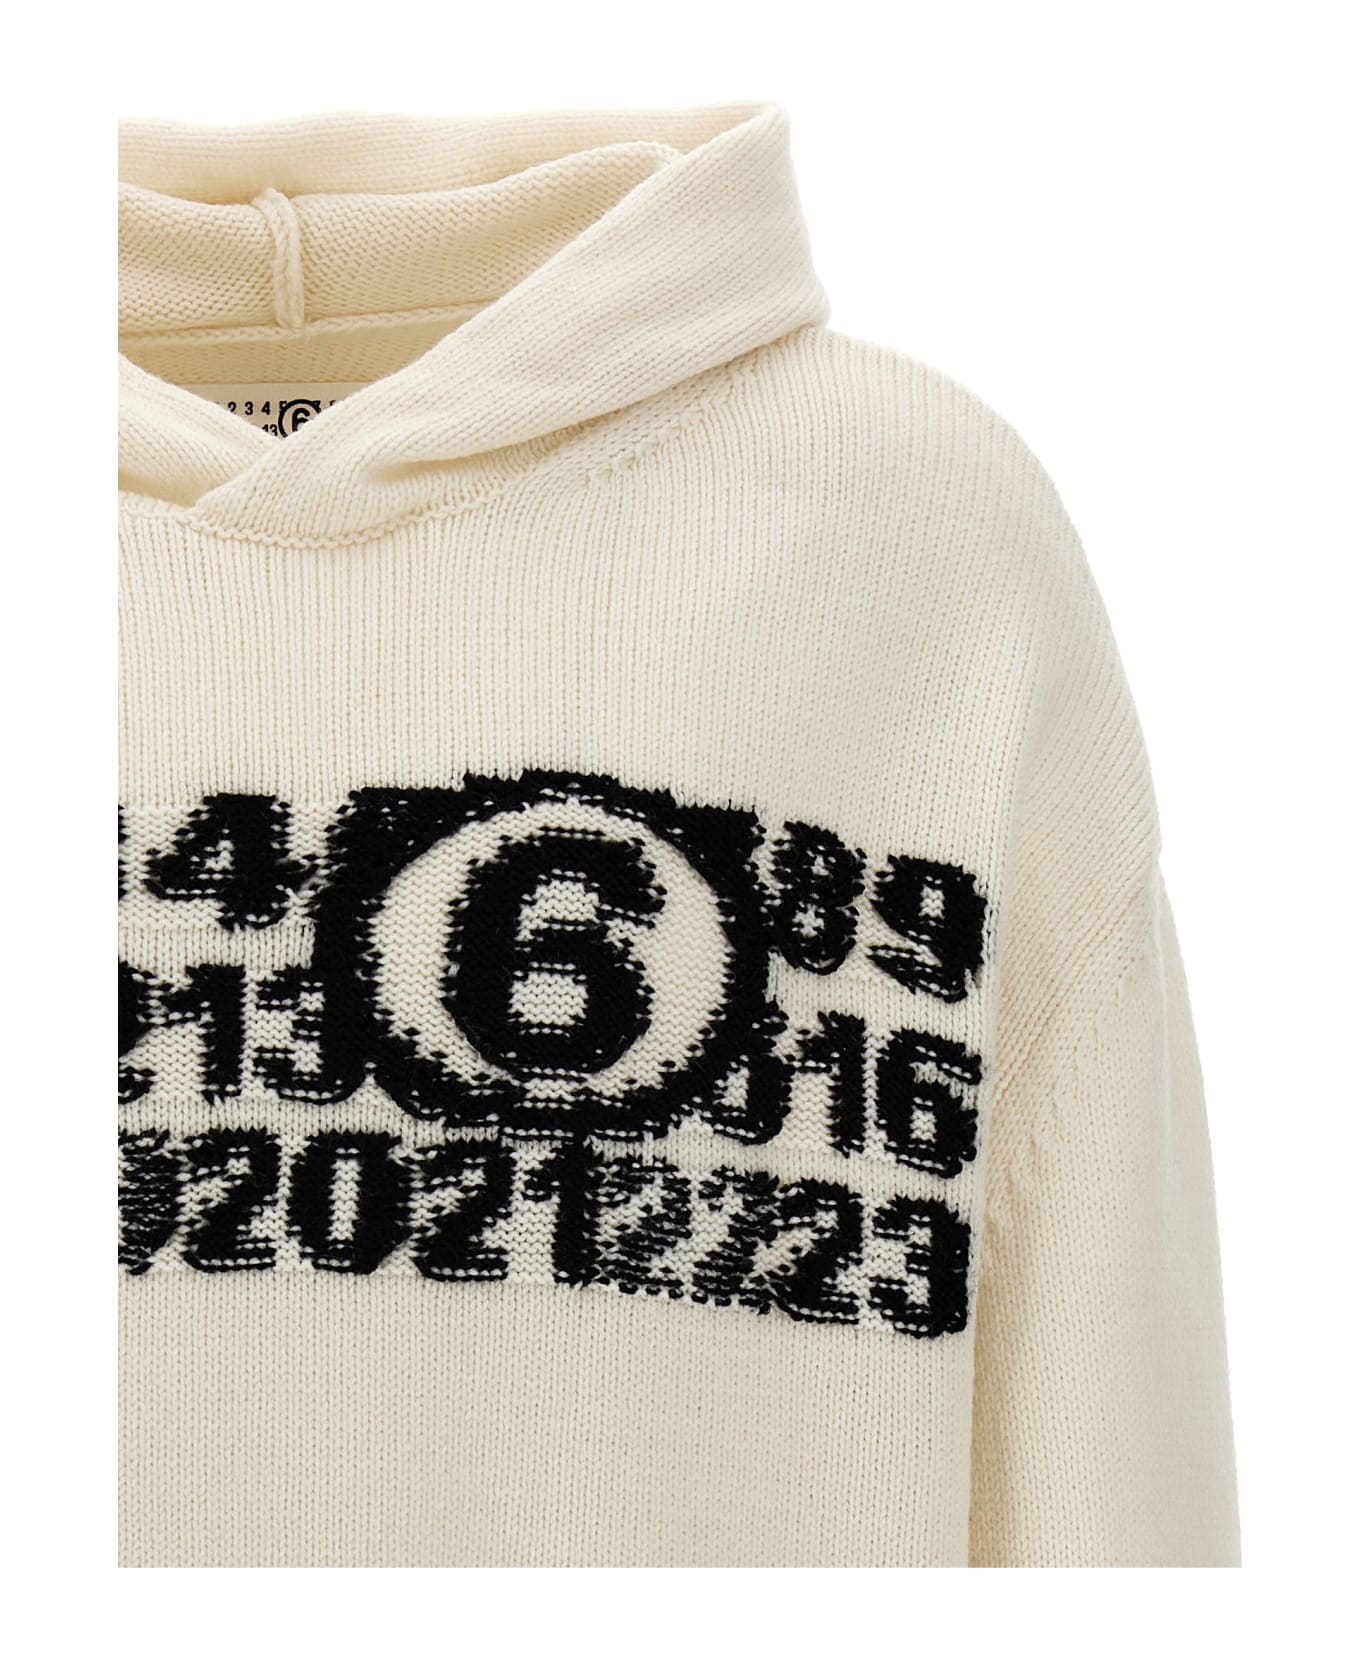 MM6 Maison Margiela 'numeric Signature' Hooded Sweater - White/Black